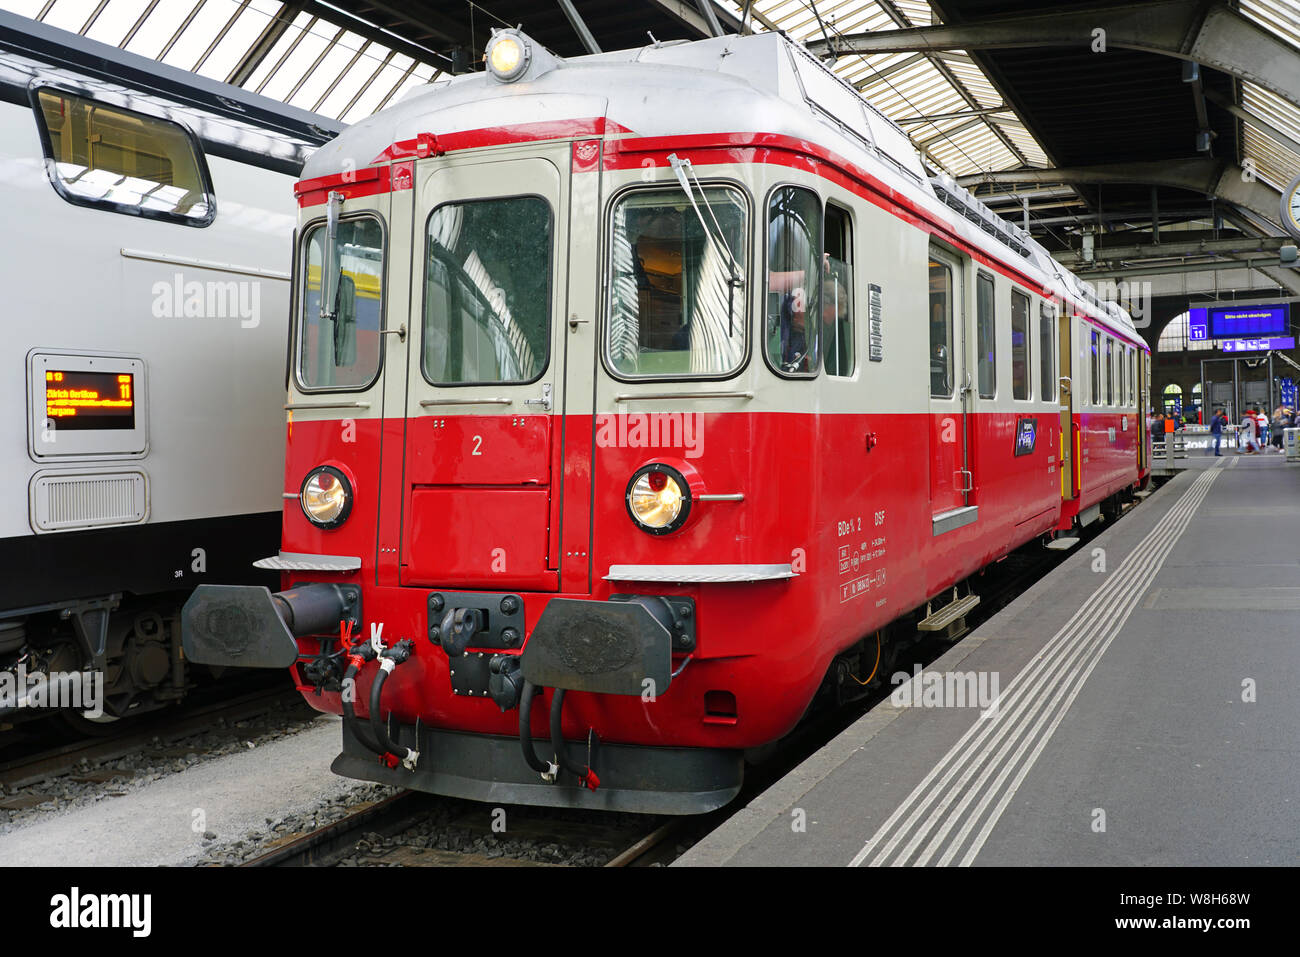 Zurigo, Svizzera -19 maggio 2019- i treni da FFS Ferrovie Federali Svizzere company (Schweizerische Bundesbahnen) a Zurigo stazione ferroviaria. Foto Stock